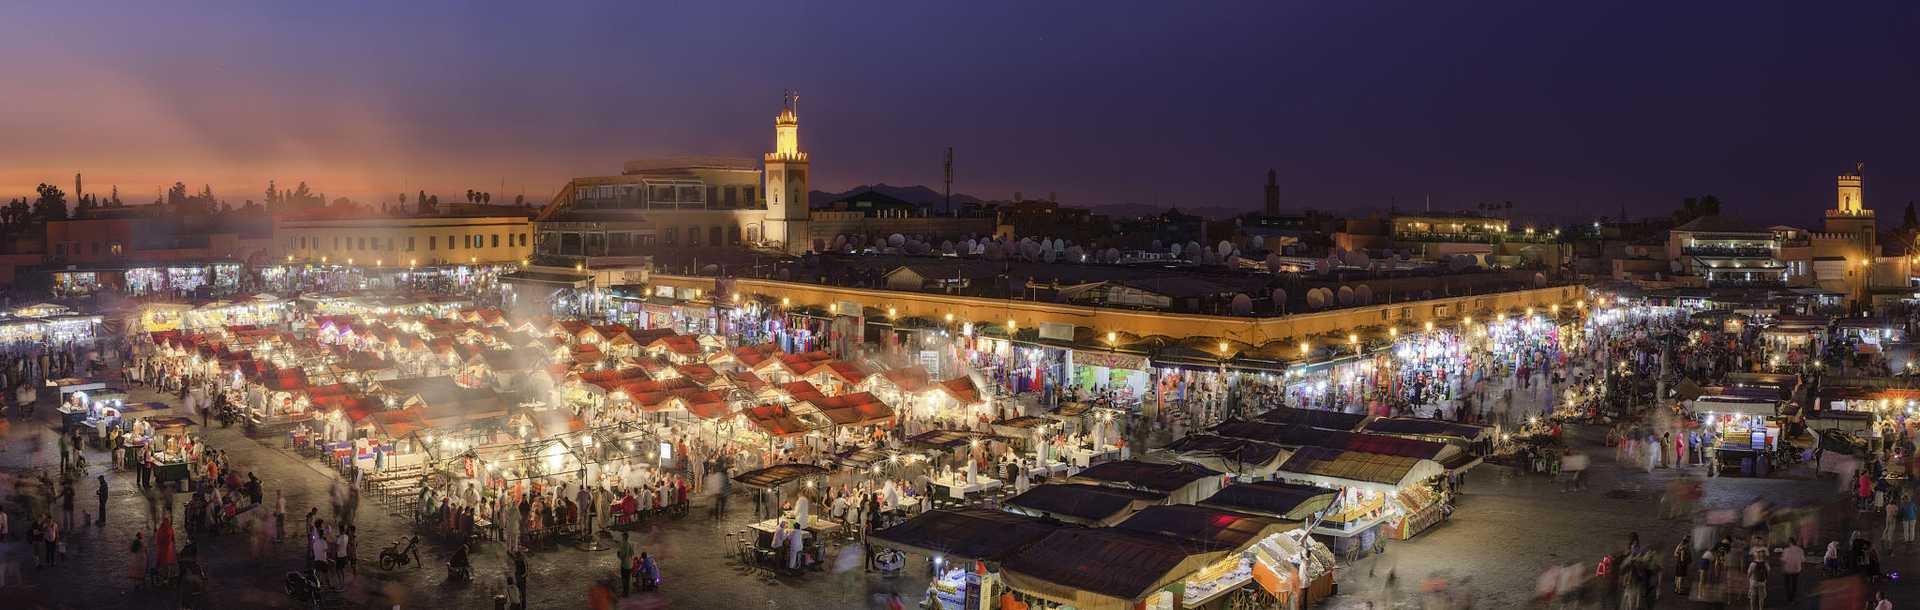 Dusk at Jemaa el-Fnaa Market in Marrakesh, Morocco.